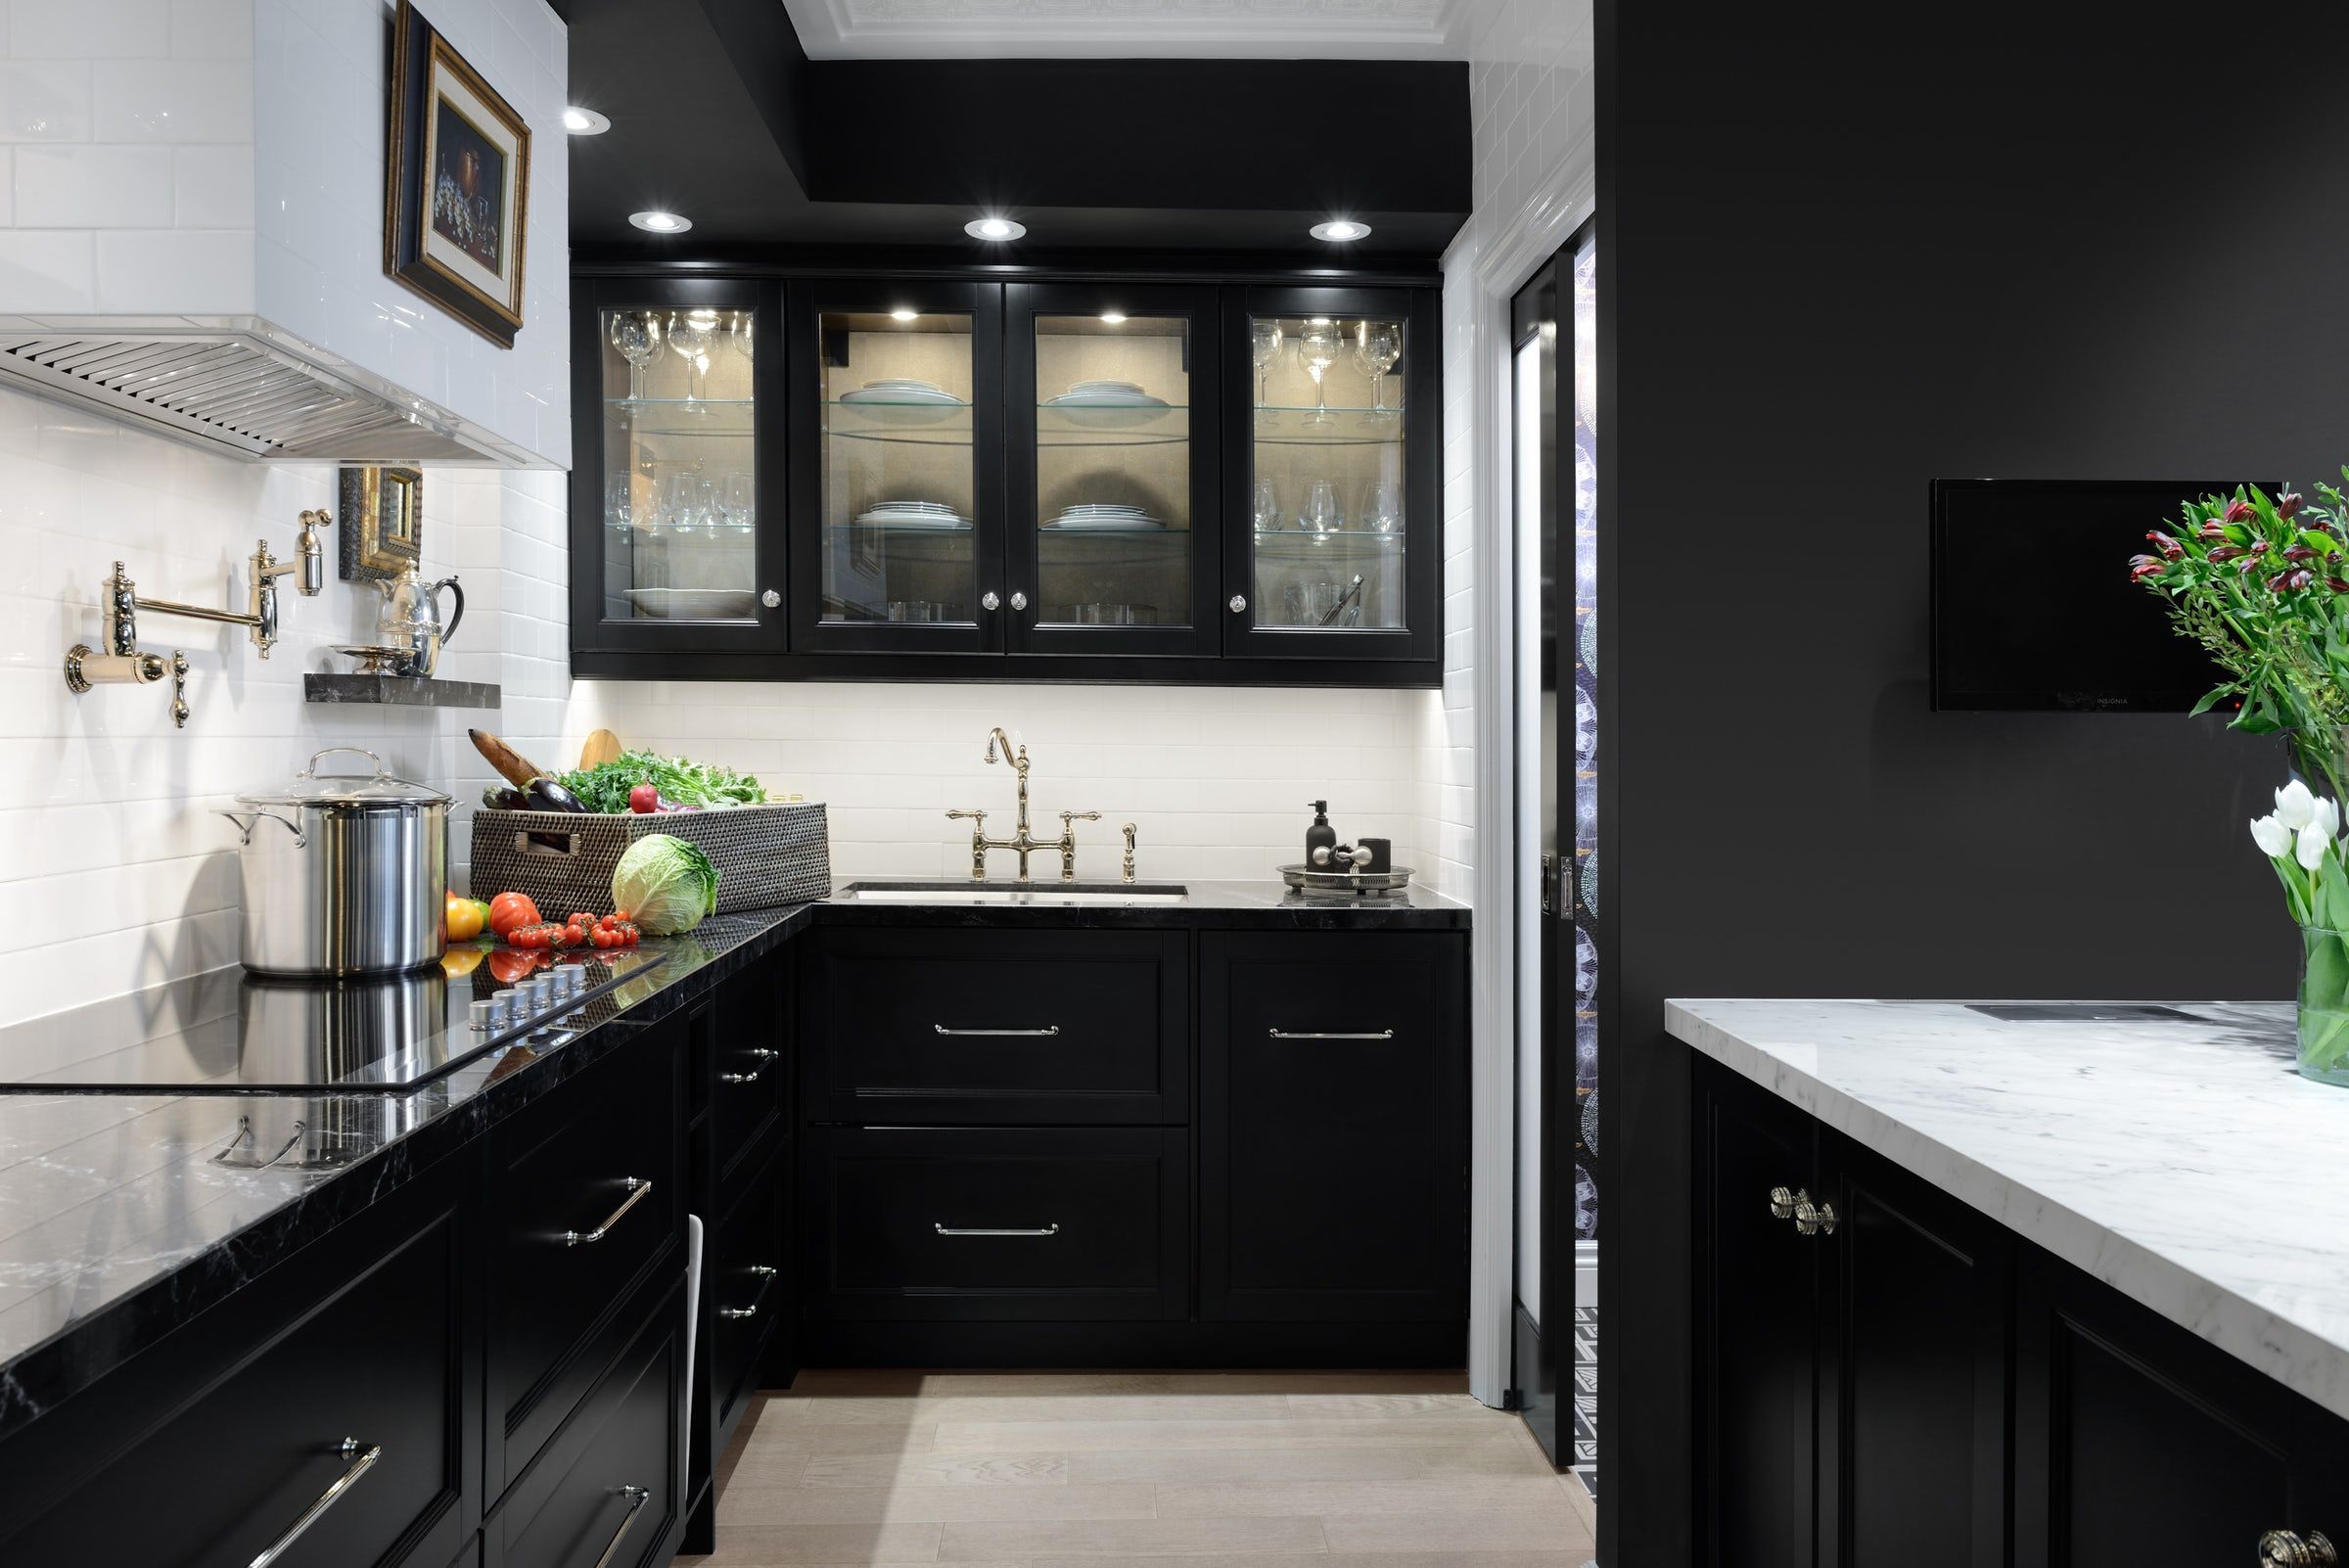 2020 kitchen trend black cabinets